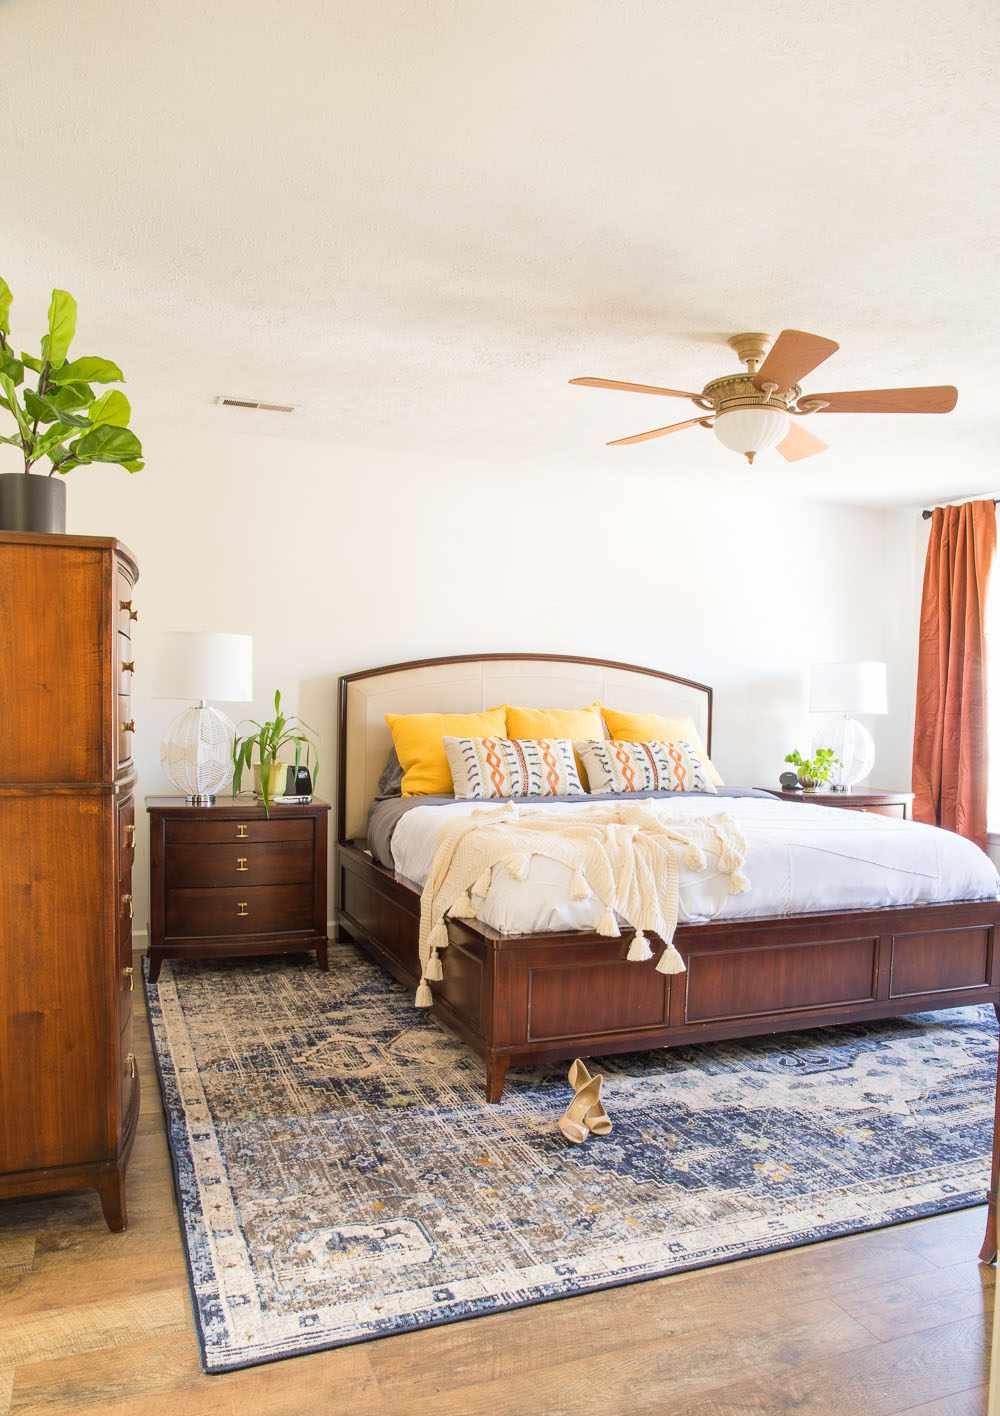 Với phòng ngủ lớn, hãy tận dụng vẻ đẹp, sự vững chãi của nội thất gỗ và các gam màu nóng để “làm ấm” không gian.